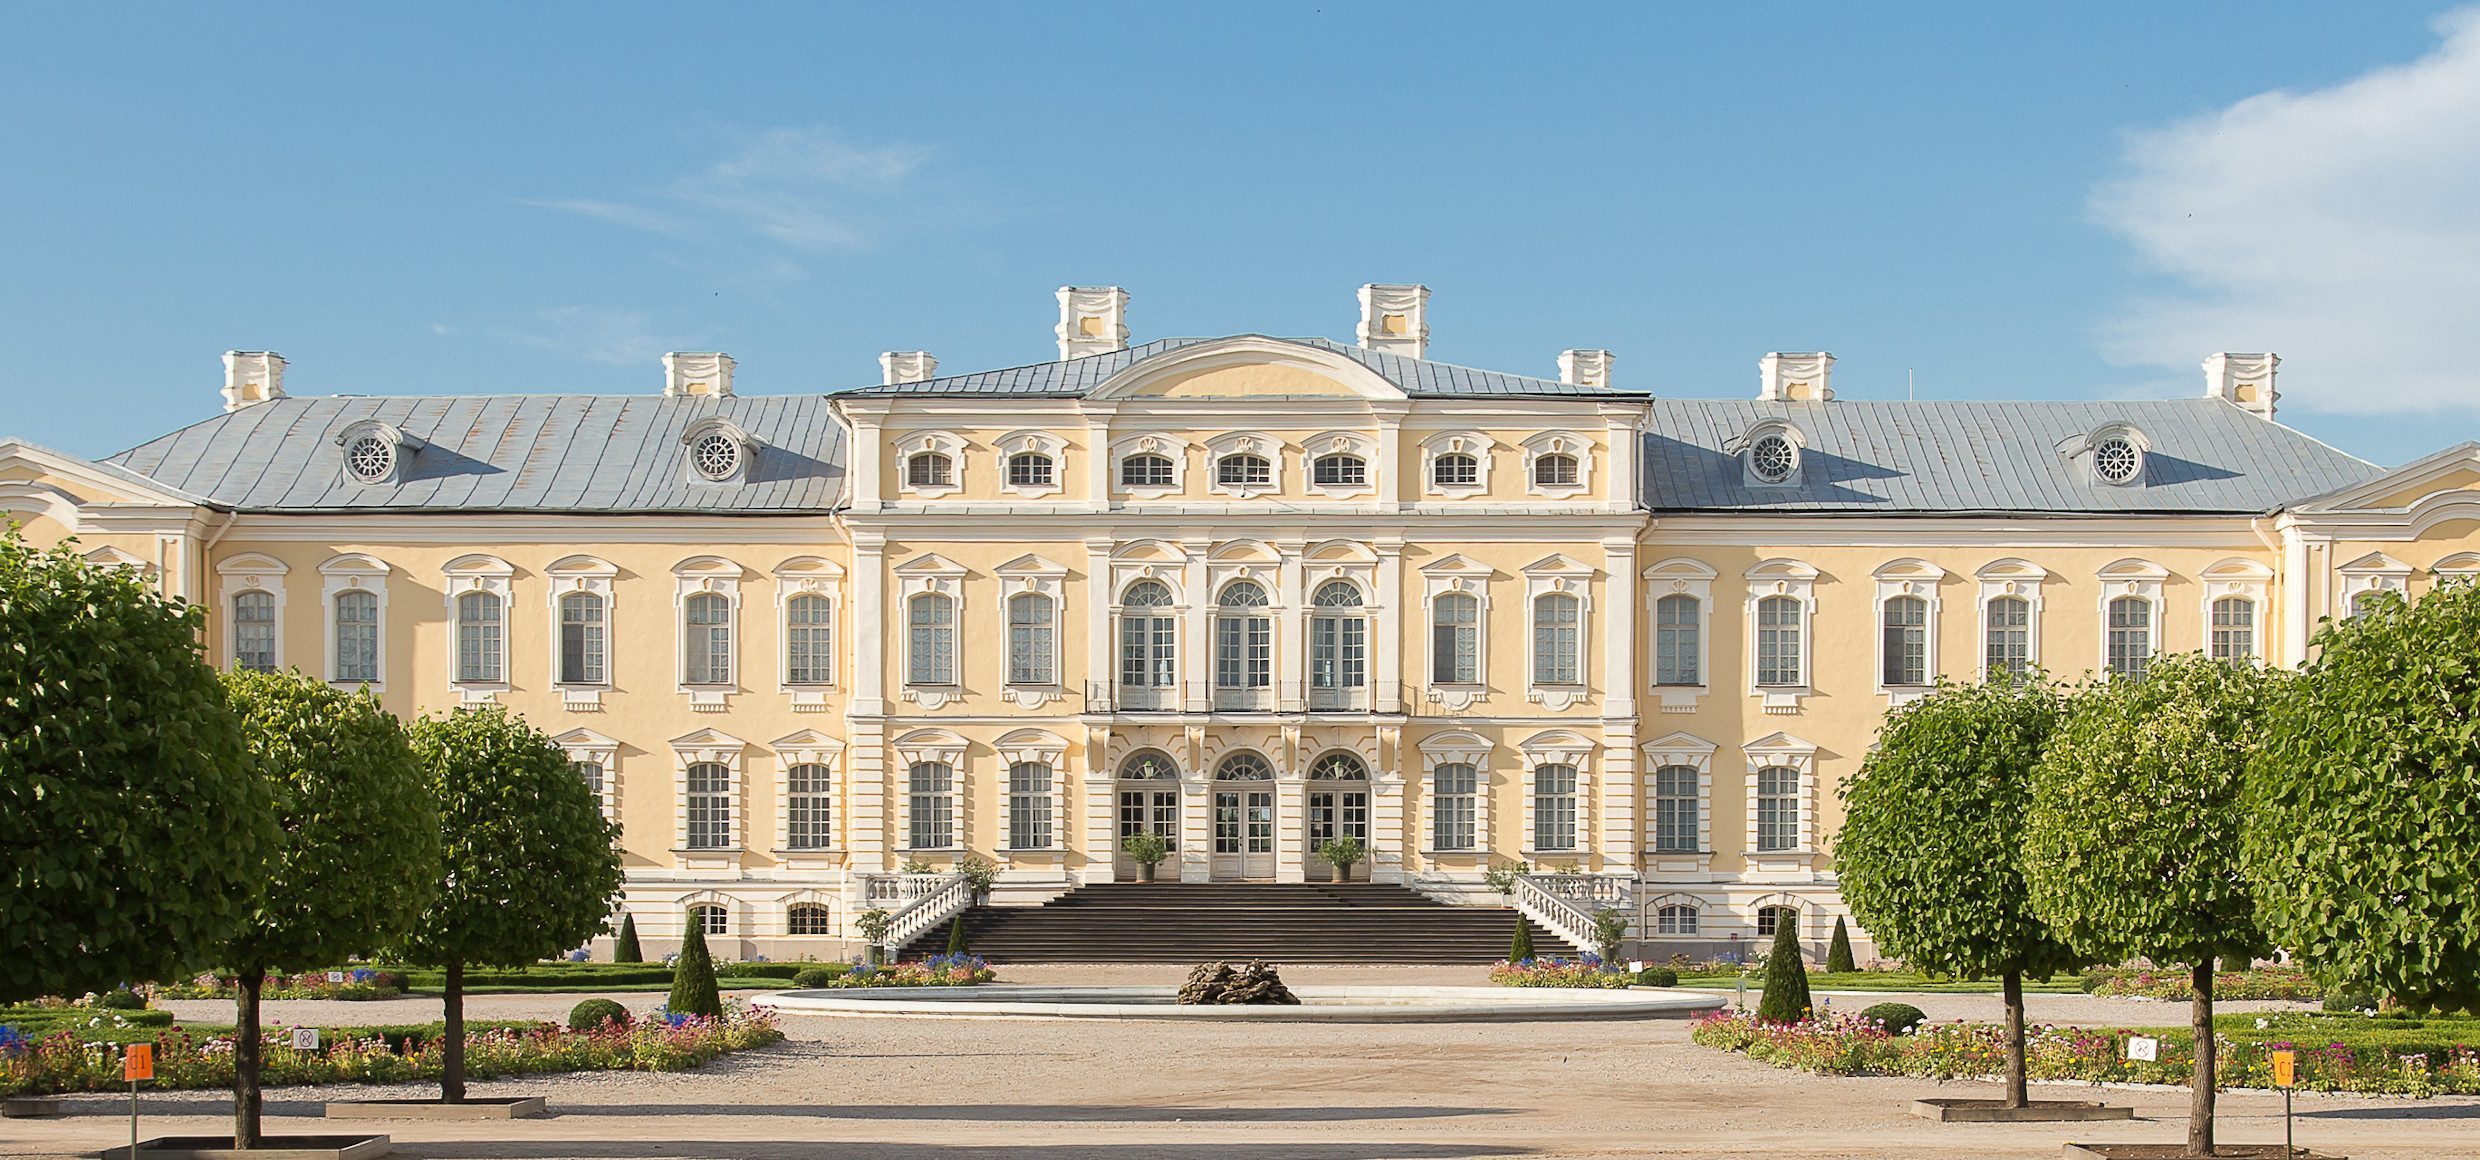 Lettland-Palast-Kulturreise